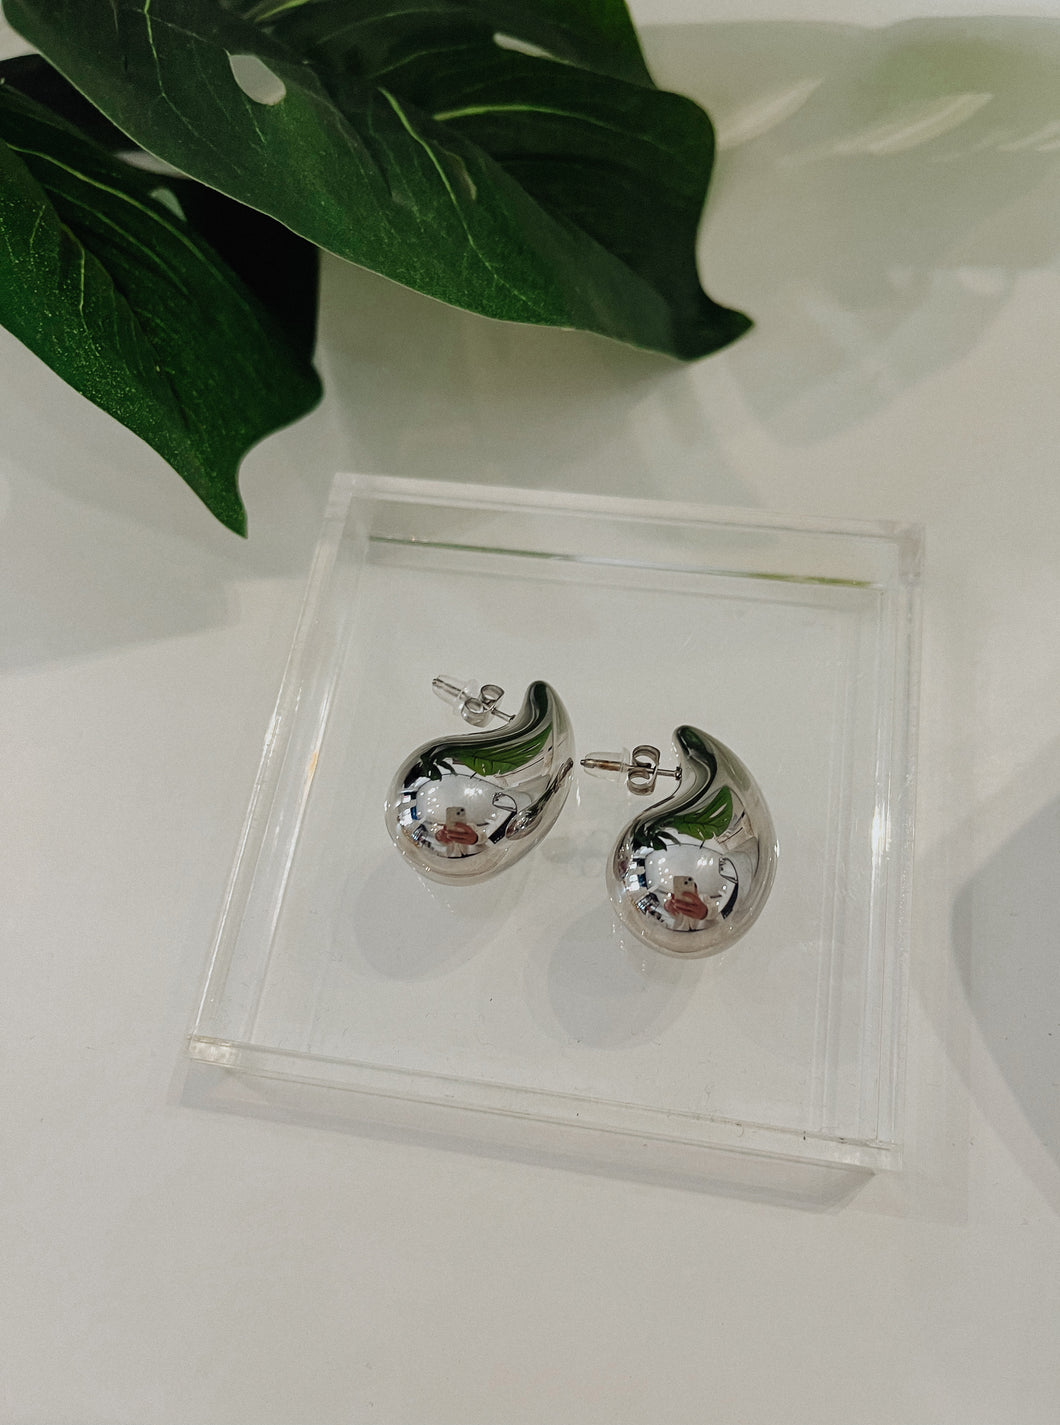 The “Blair” Waterdrop Earrings